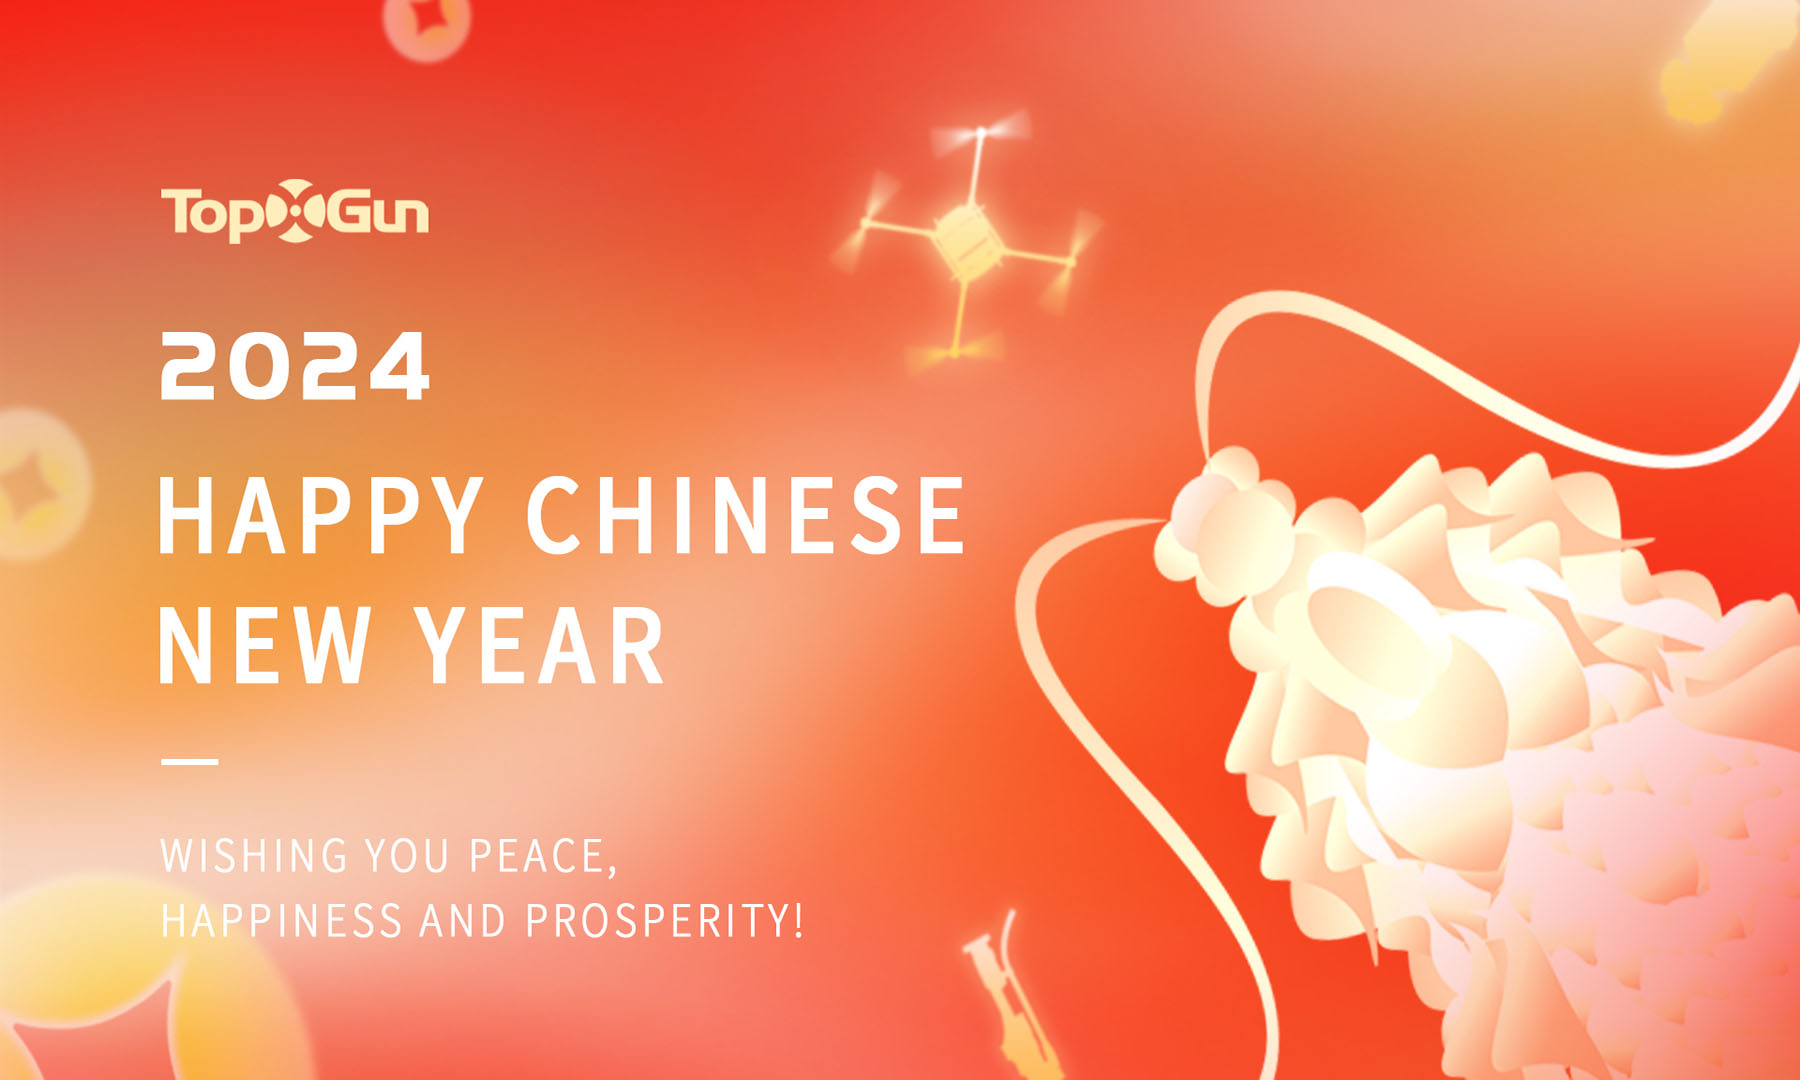 Celebra el Año Nuevo Chino 2024 con Topxgun